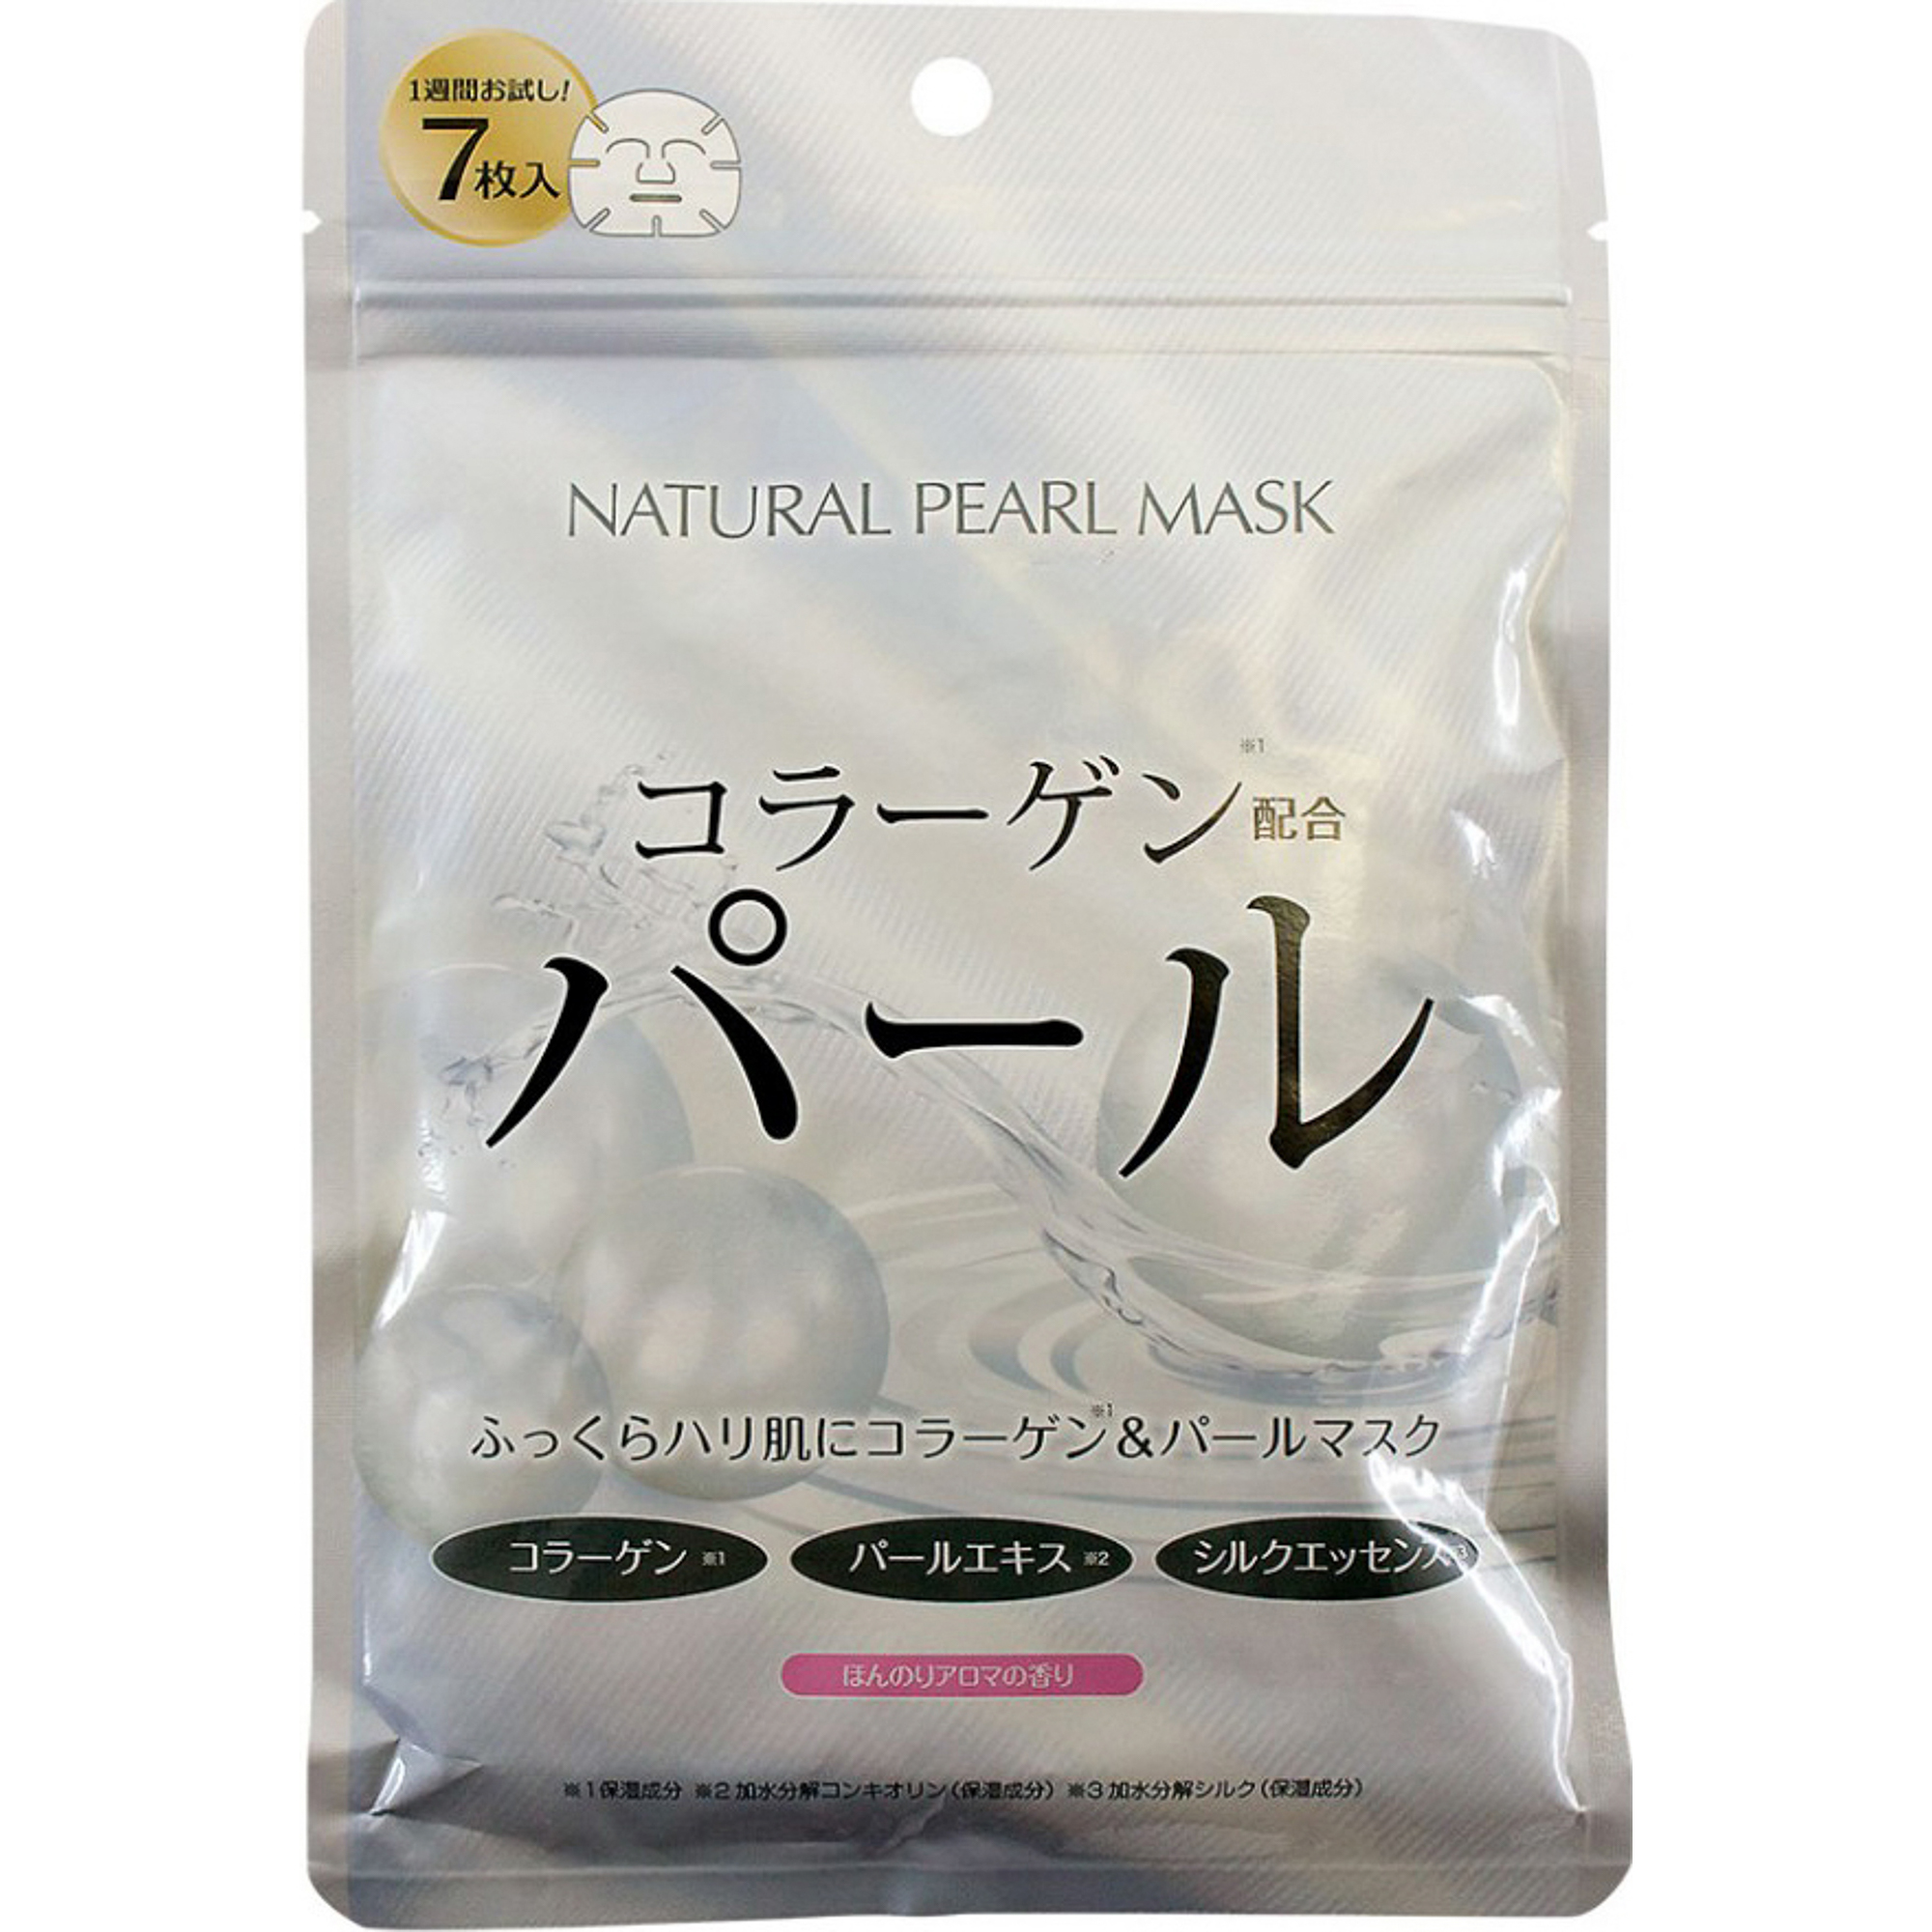 Тканевая маска Japan Gals С экстрактом жемчуга 7 шт тканевая маска japan gals premium с тремя видами плаценты 30 шт